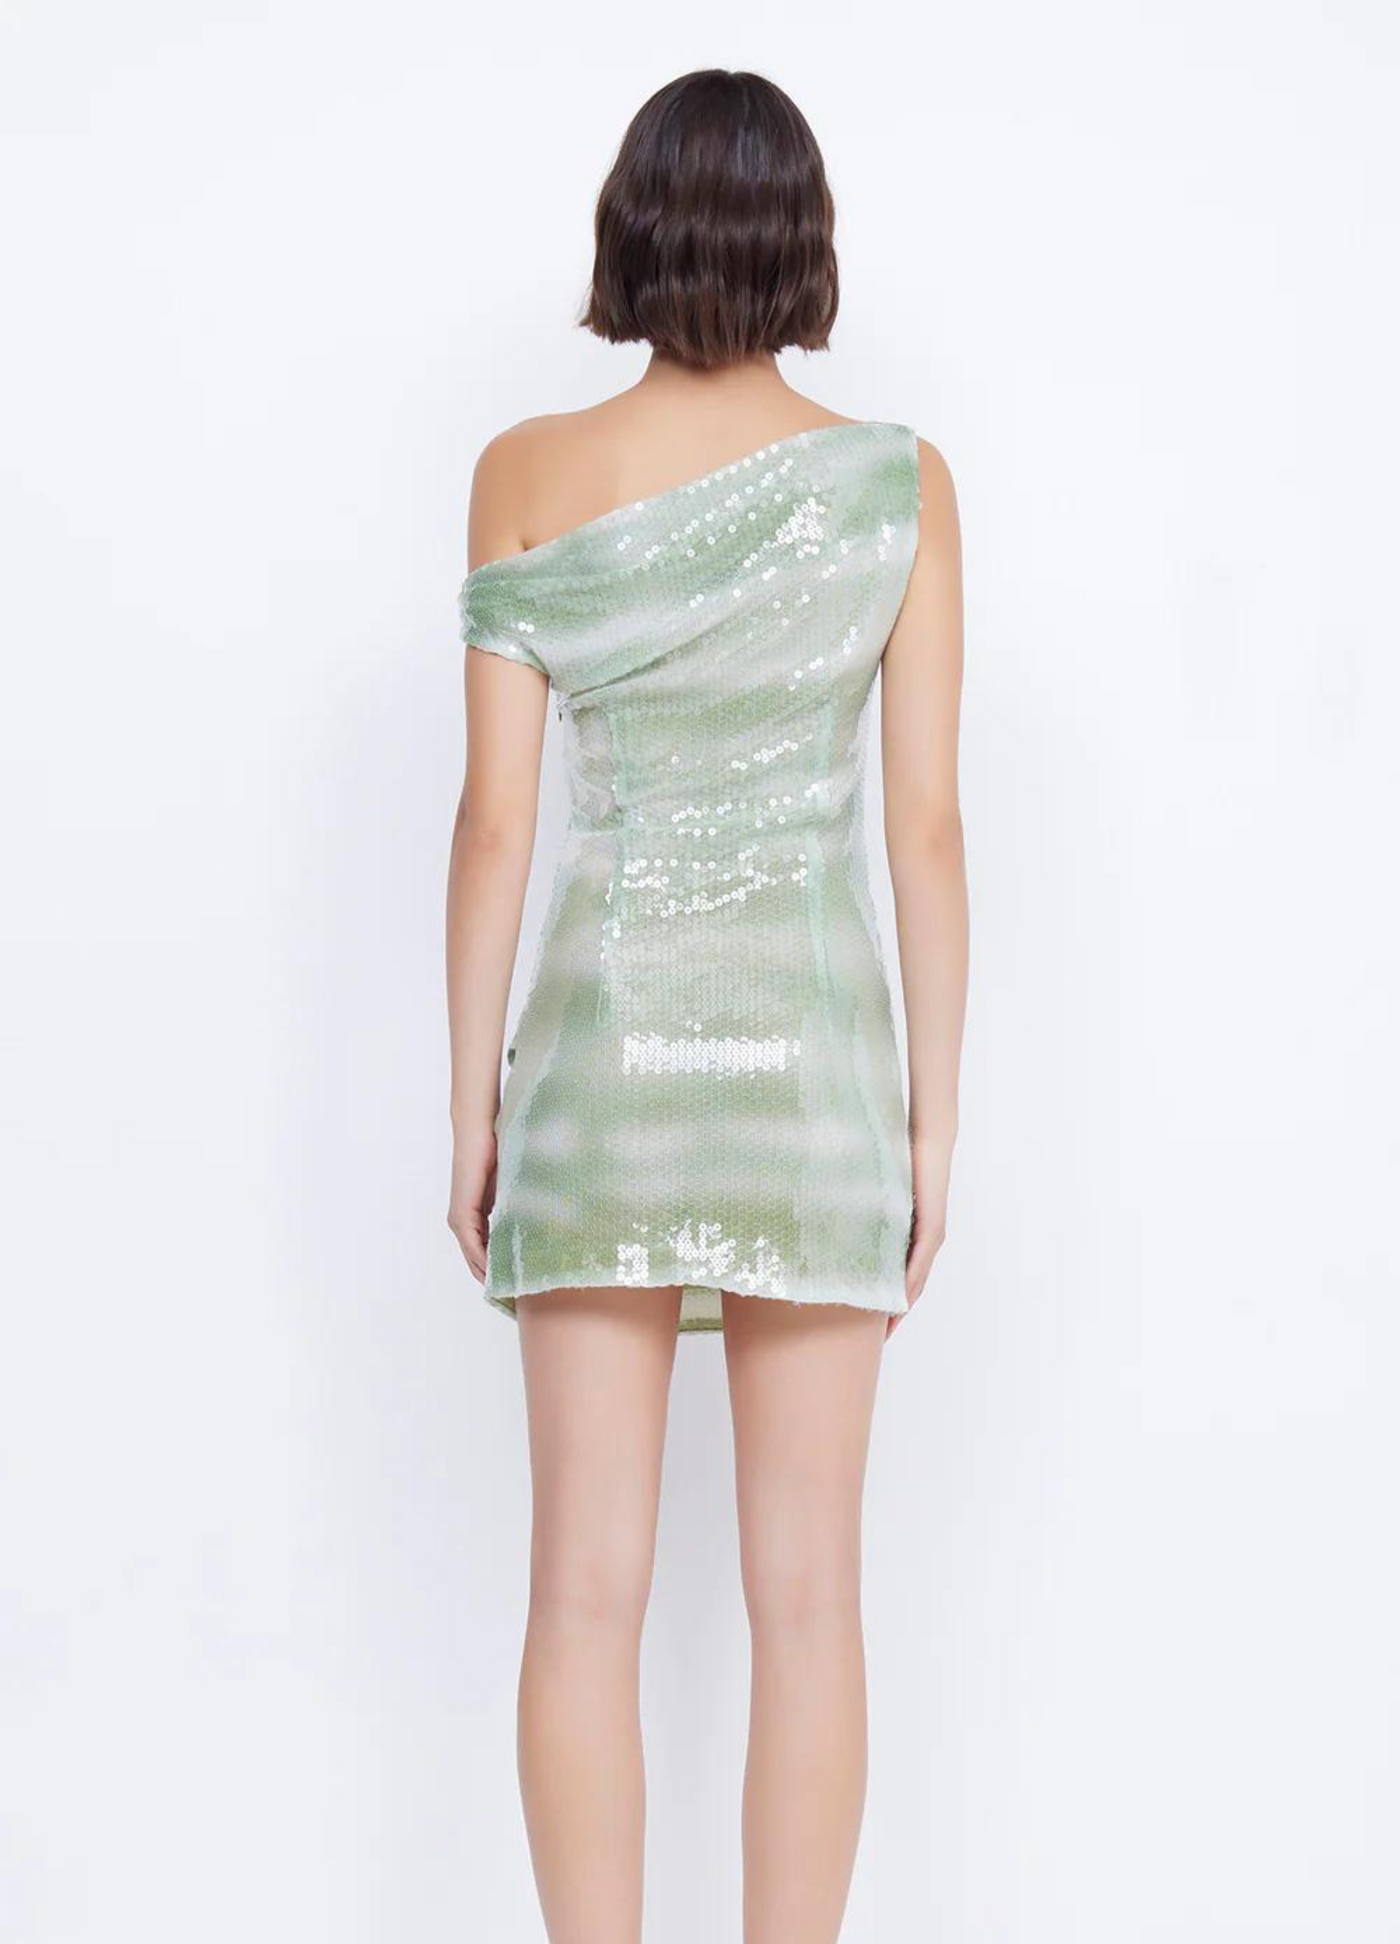 Bec + Bridge Brydie Dress - mint colour sequins